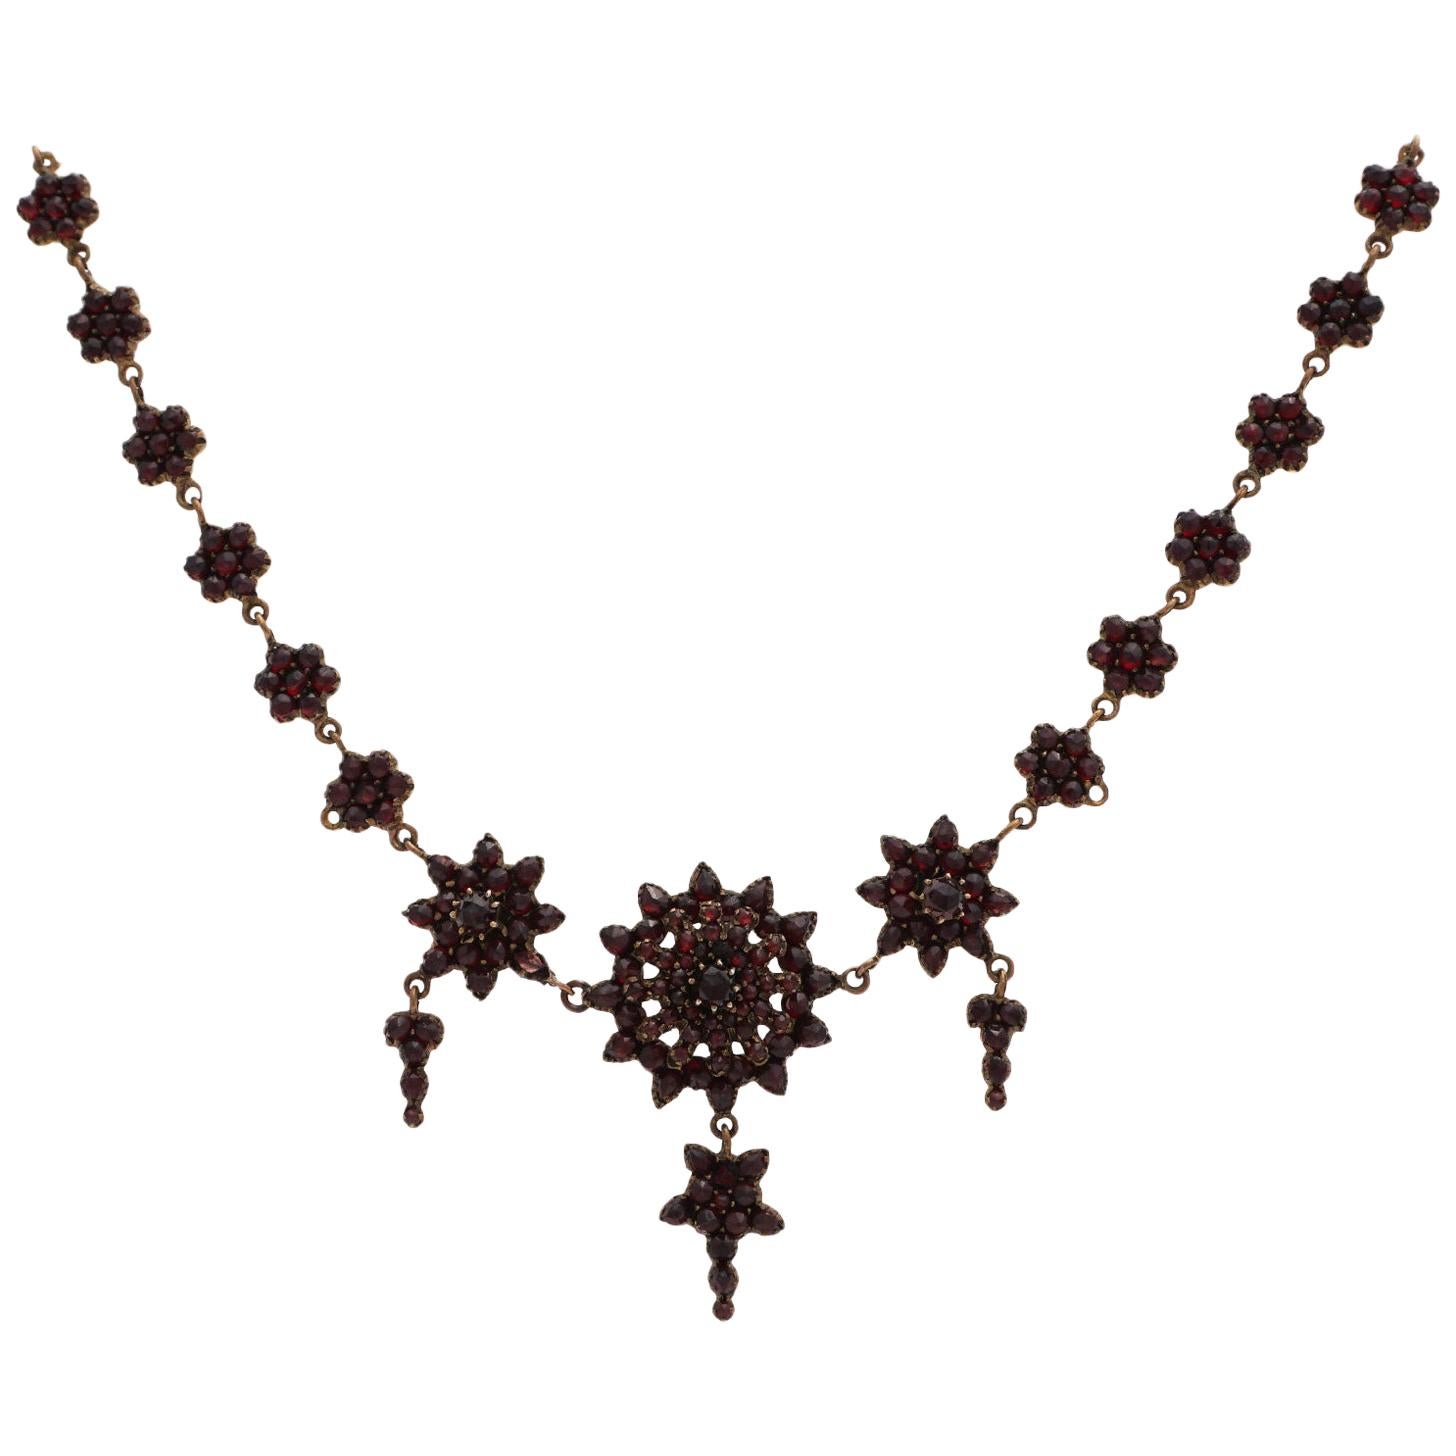 Garnet Necklace, circa 1800